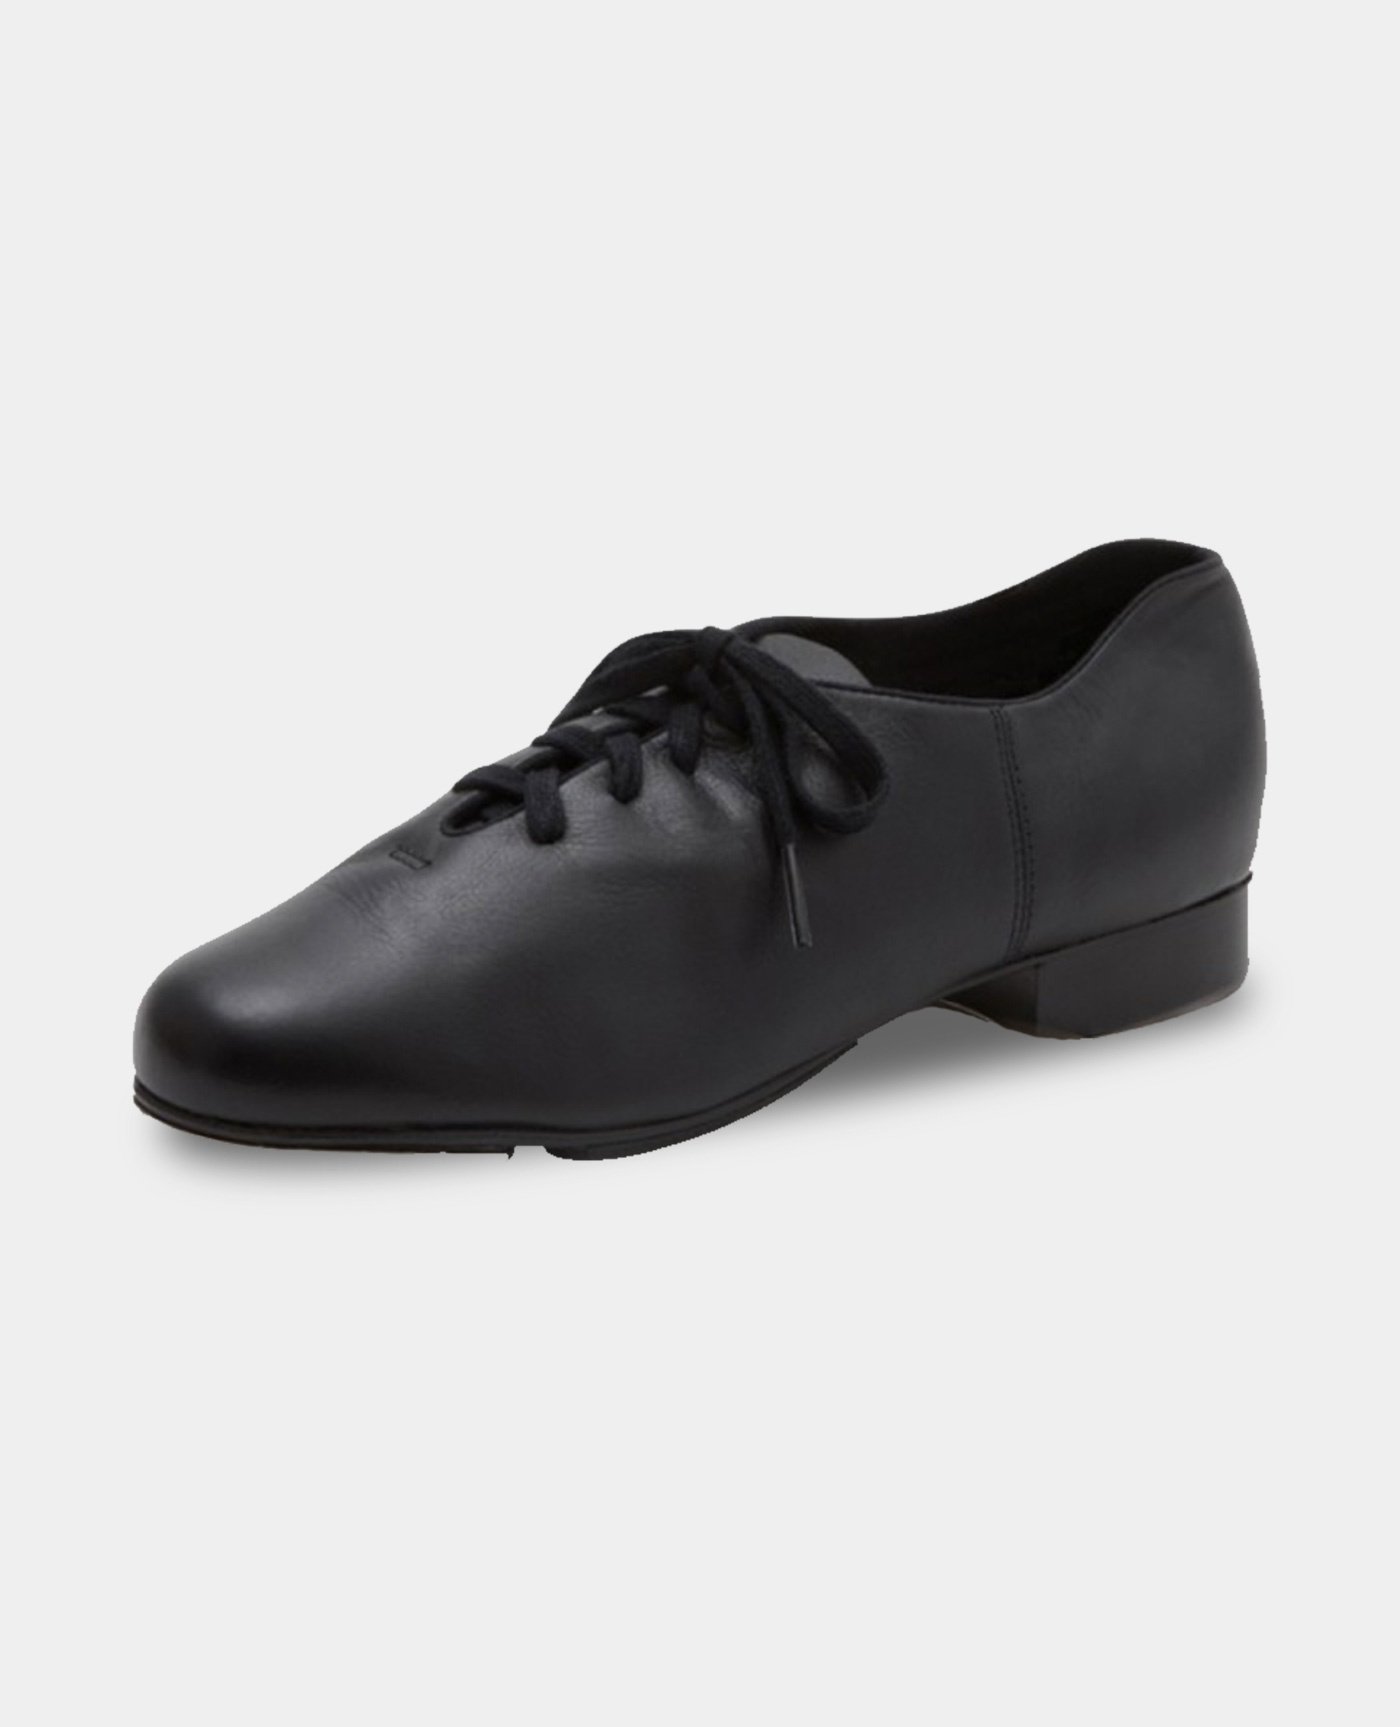 Capezio Black Tap Shoes Men's Size 8.5 – MSU Surplus Store